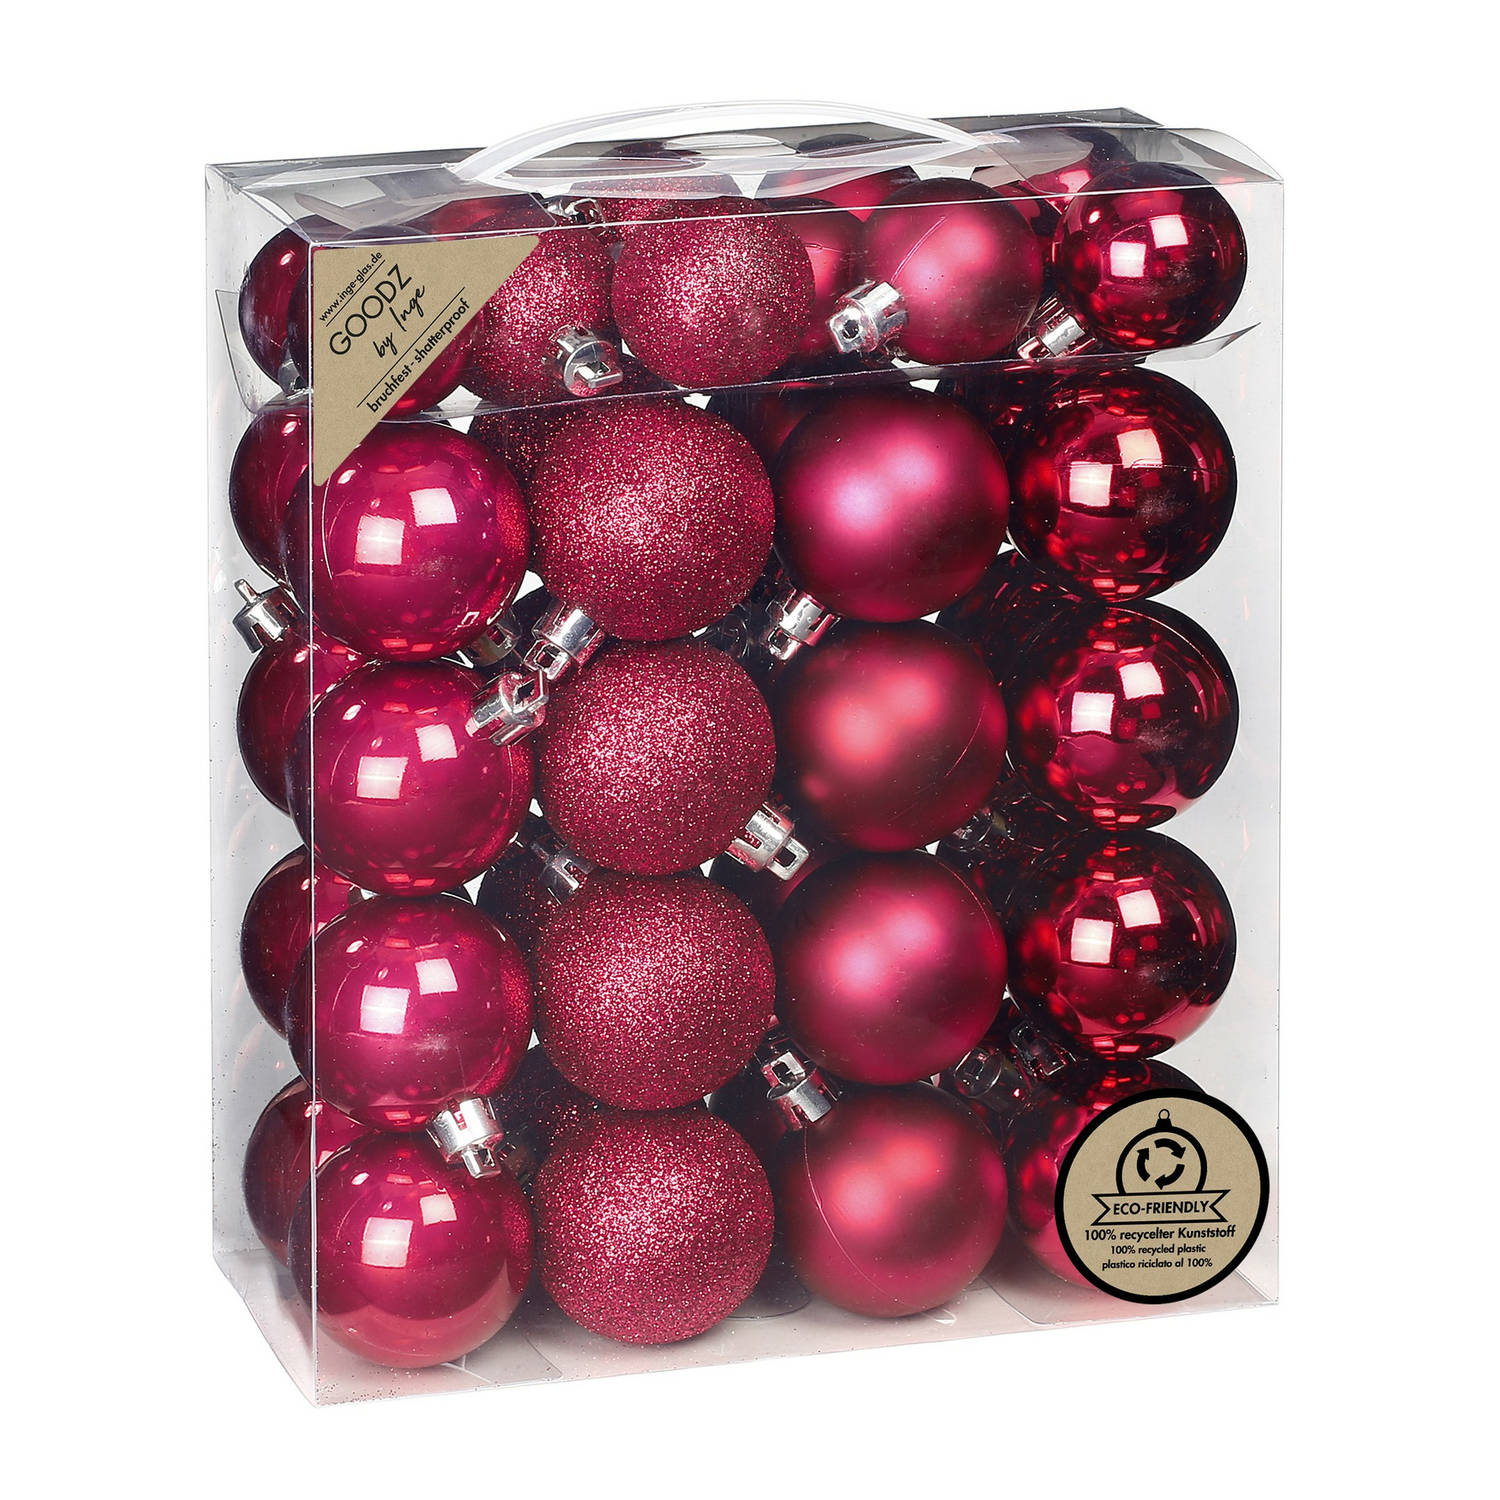 Inge Christmas kerstballen 44x st- bessen roze kunststof mix Kerstbal